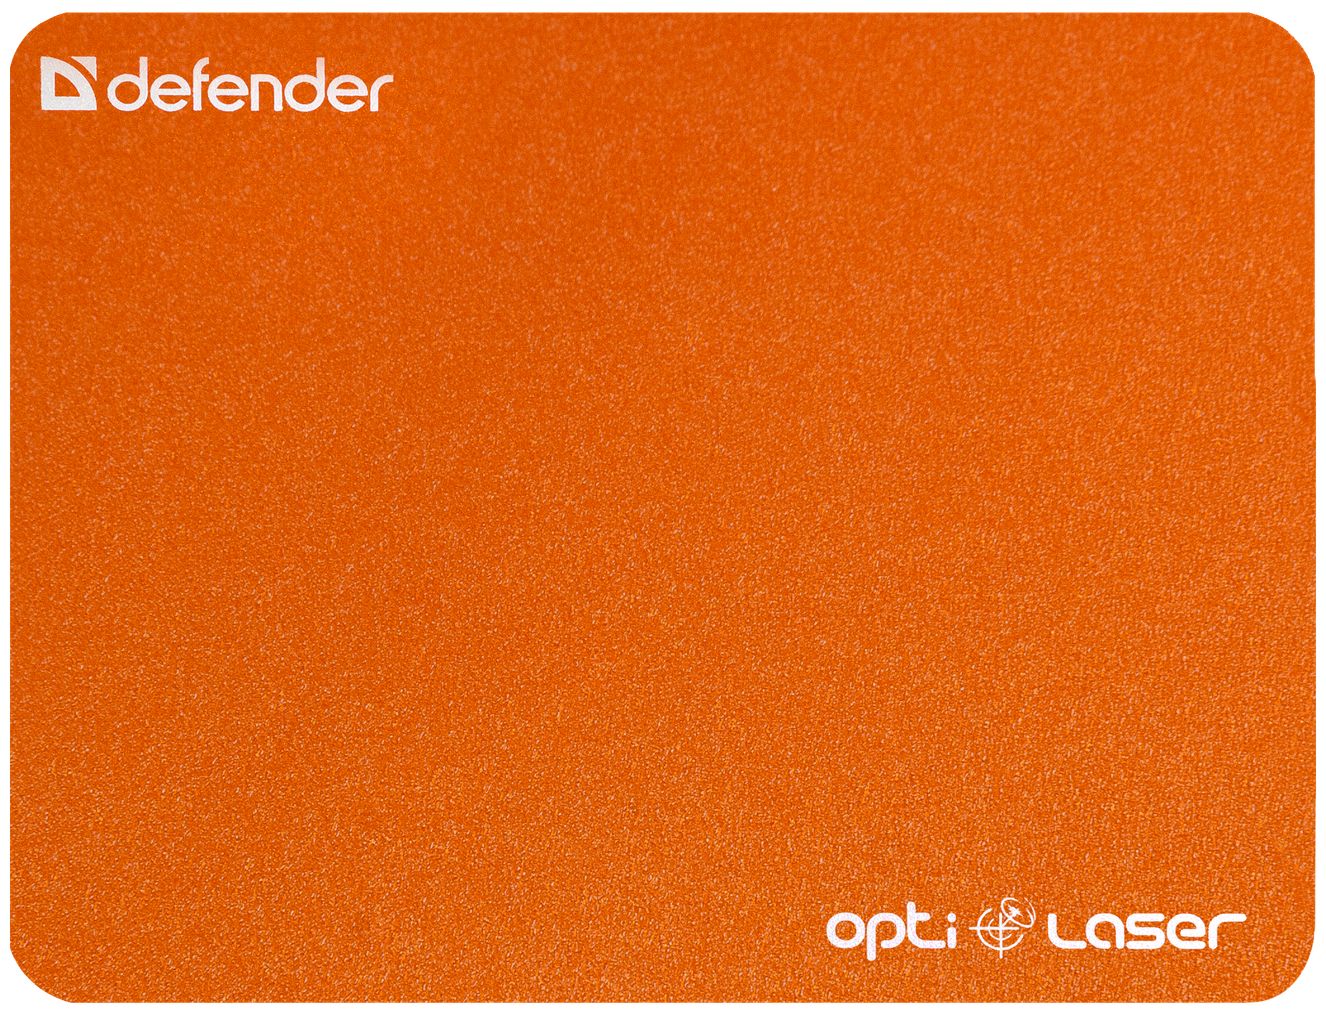 Defender Silver Laser 50410